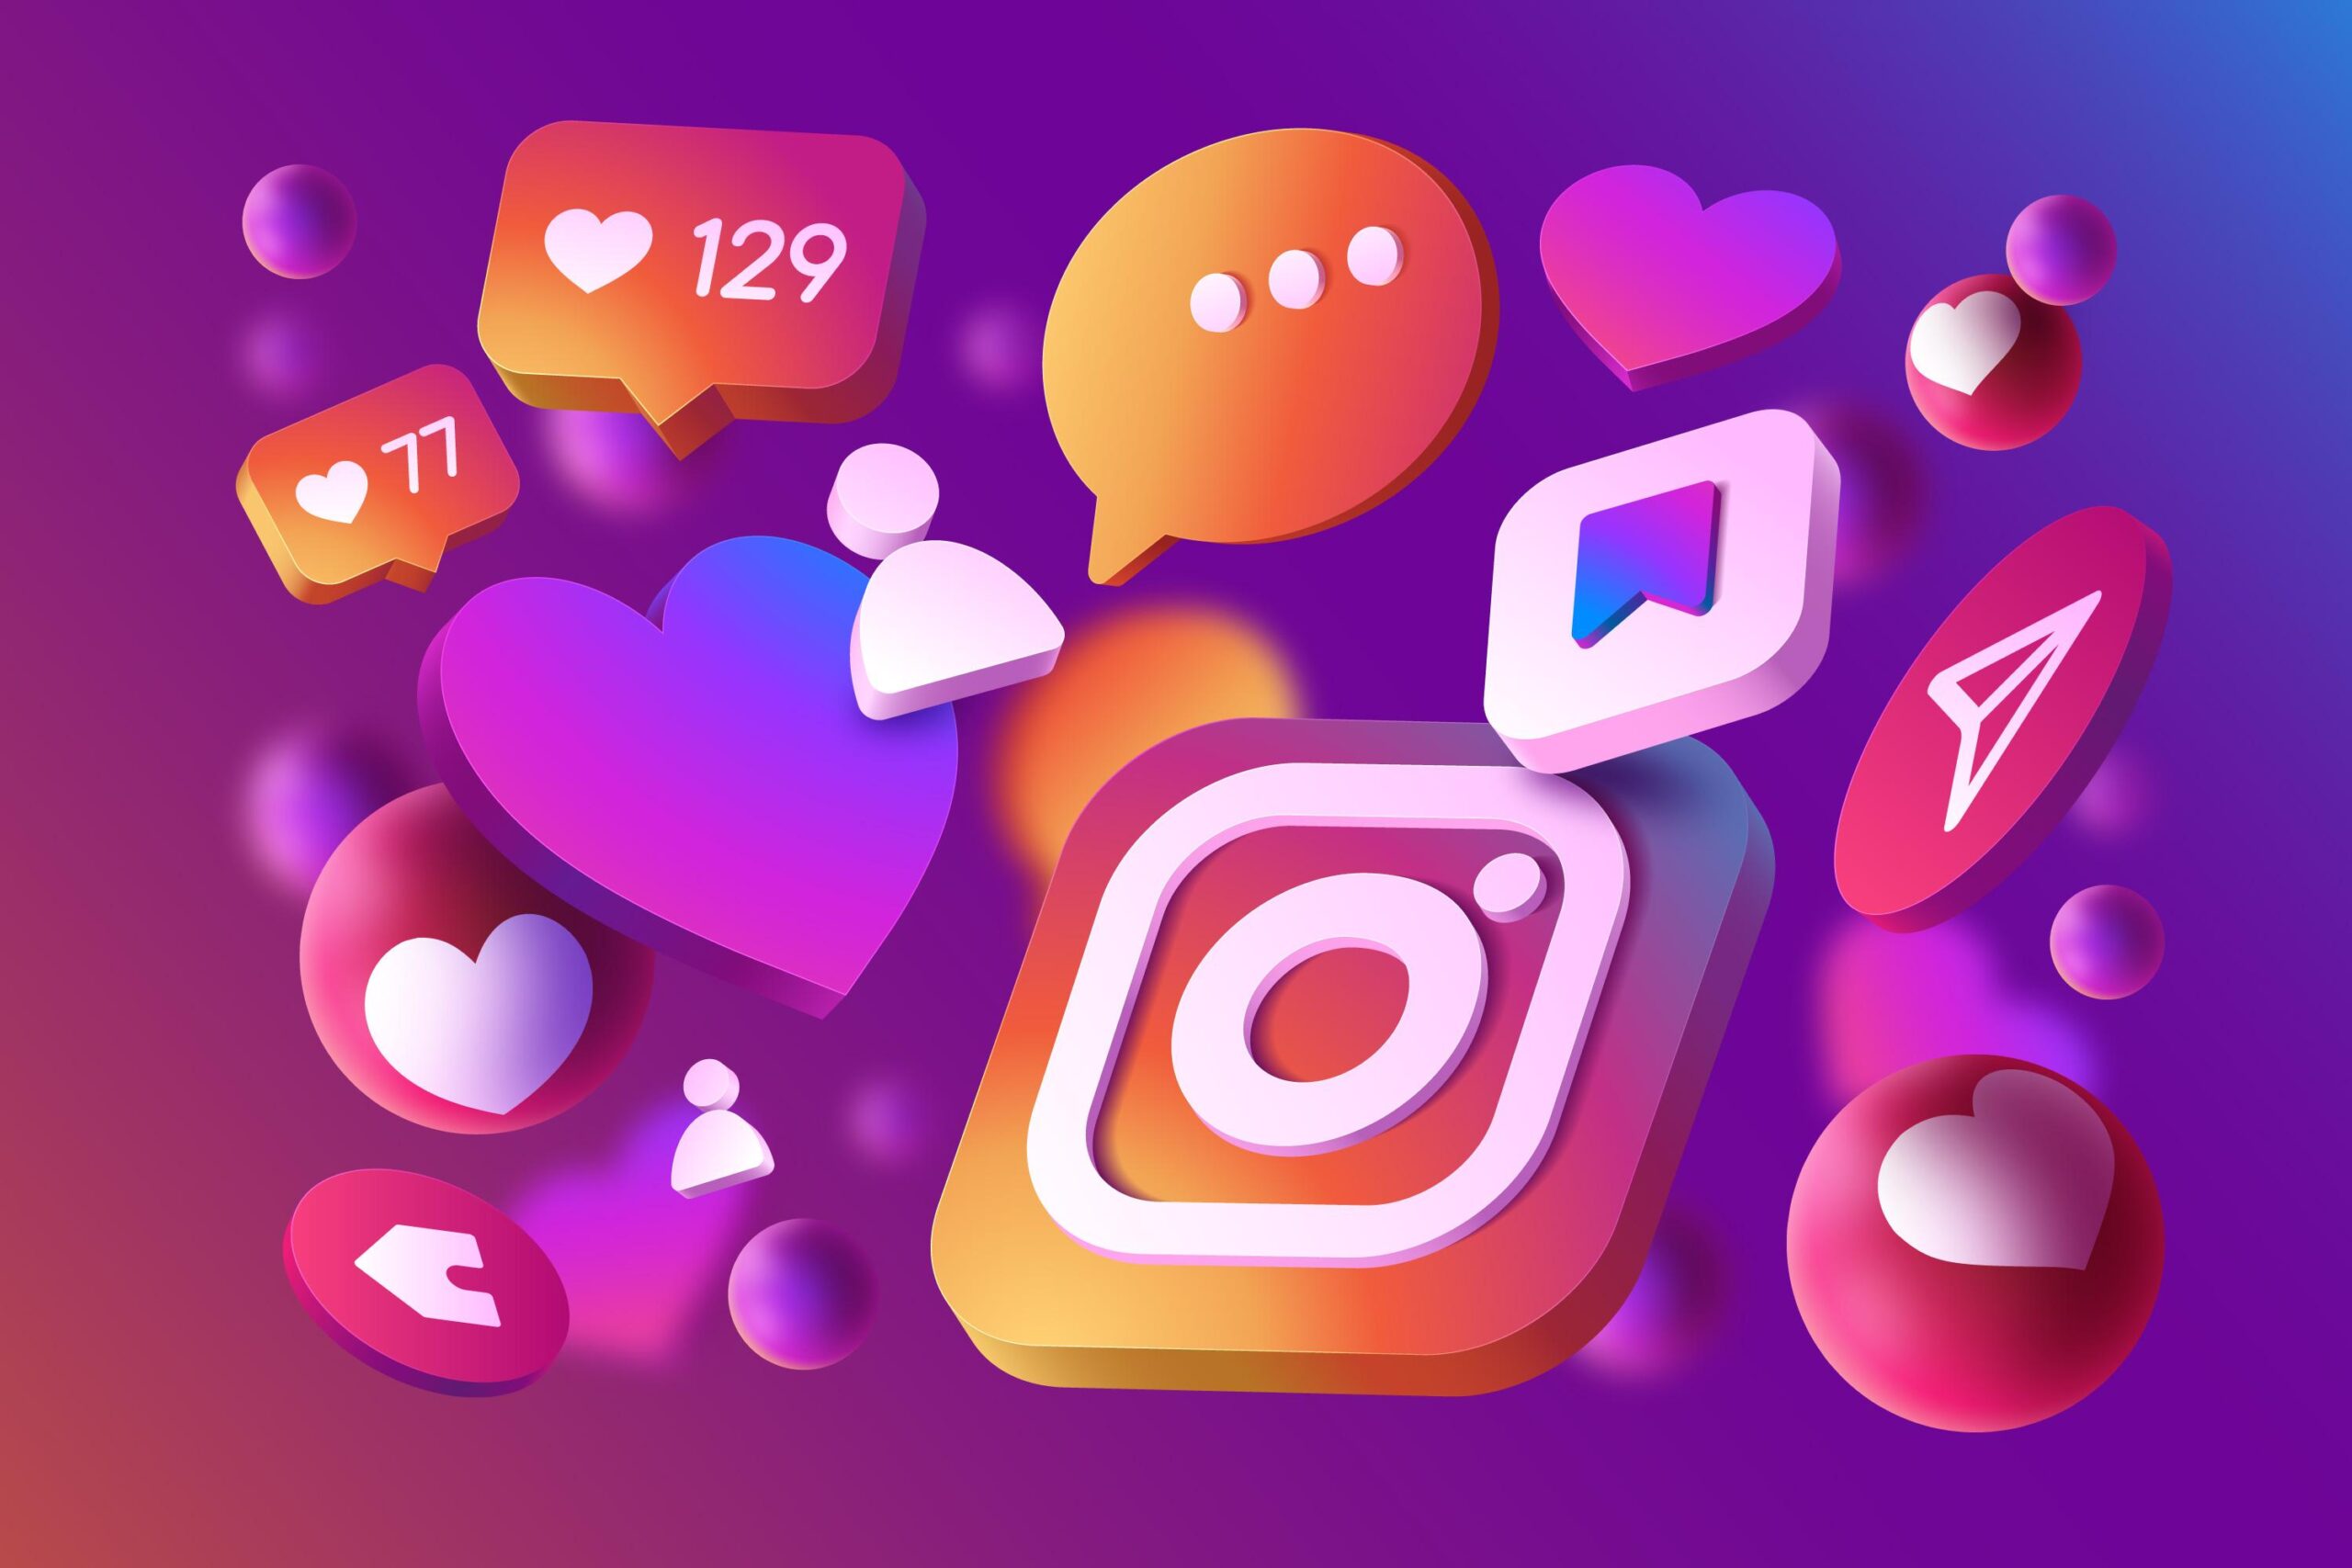 Vários ícones com a logo da rede social Instagram, na paleta de cores da marca, cercado dos ícones de engajamento também da rede social.